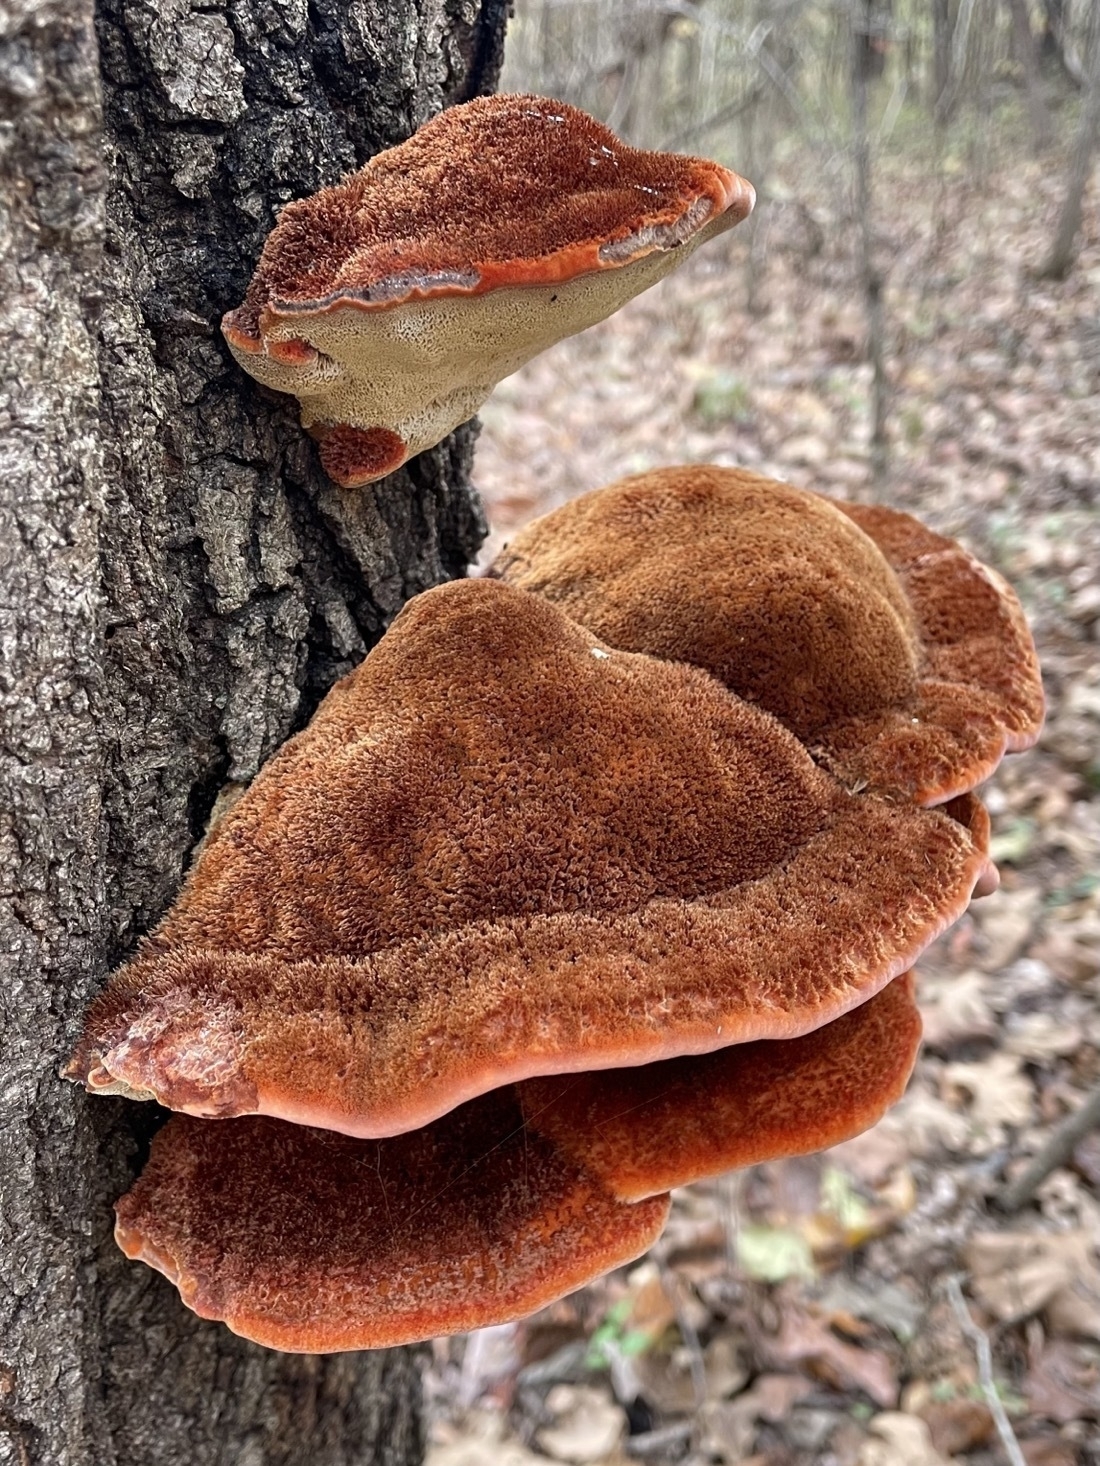 orange, velvety mushroom growing from side of tree